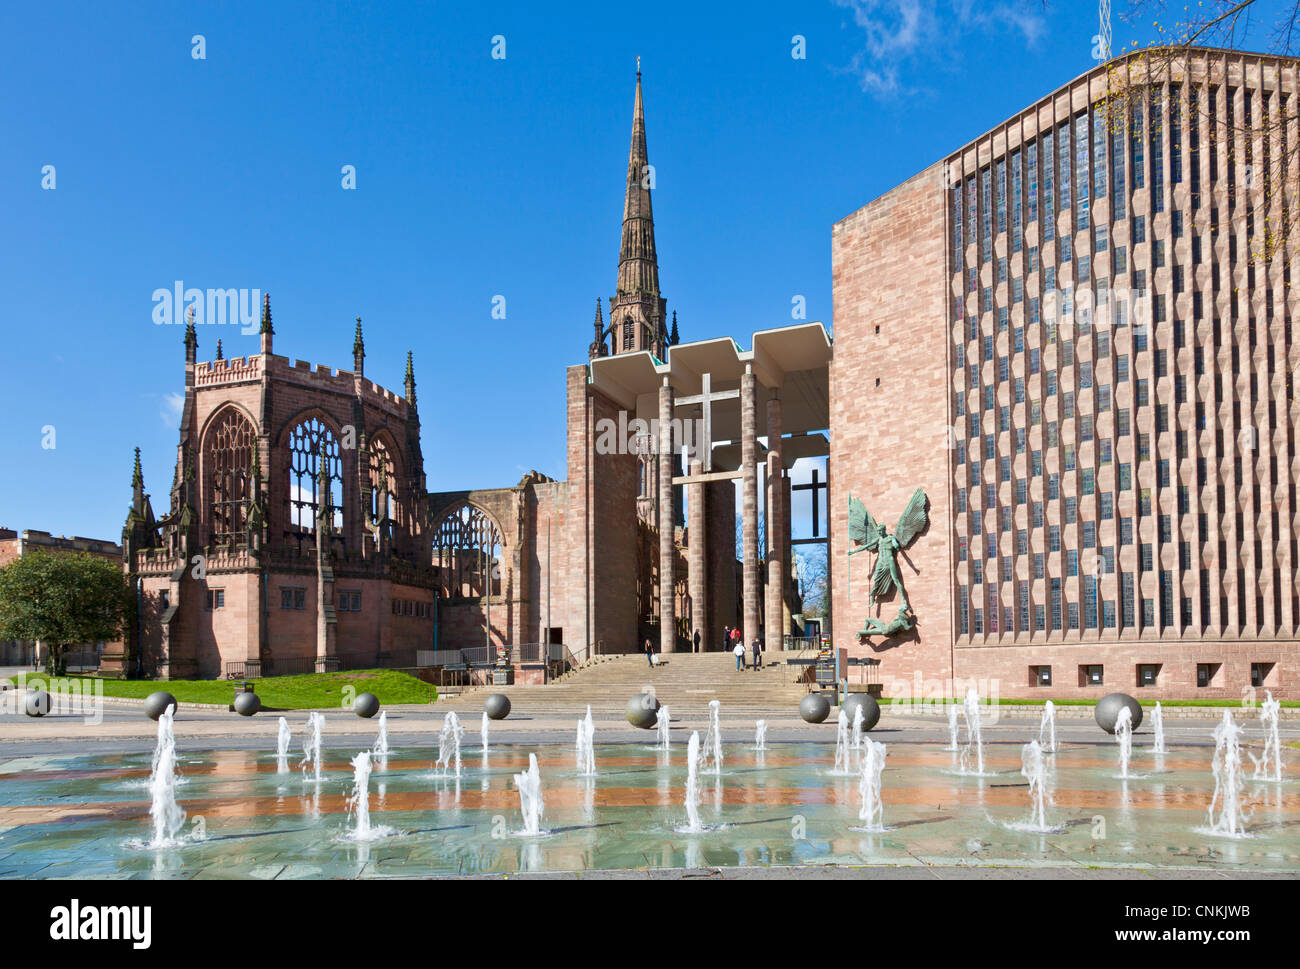 Vieille Cathédrale de Coventry et shell nouvelle cathédrale moderne West Midlands England UK GB EU Europe Banque D'Images